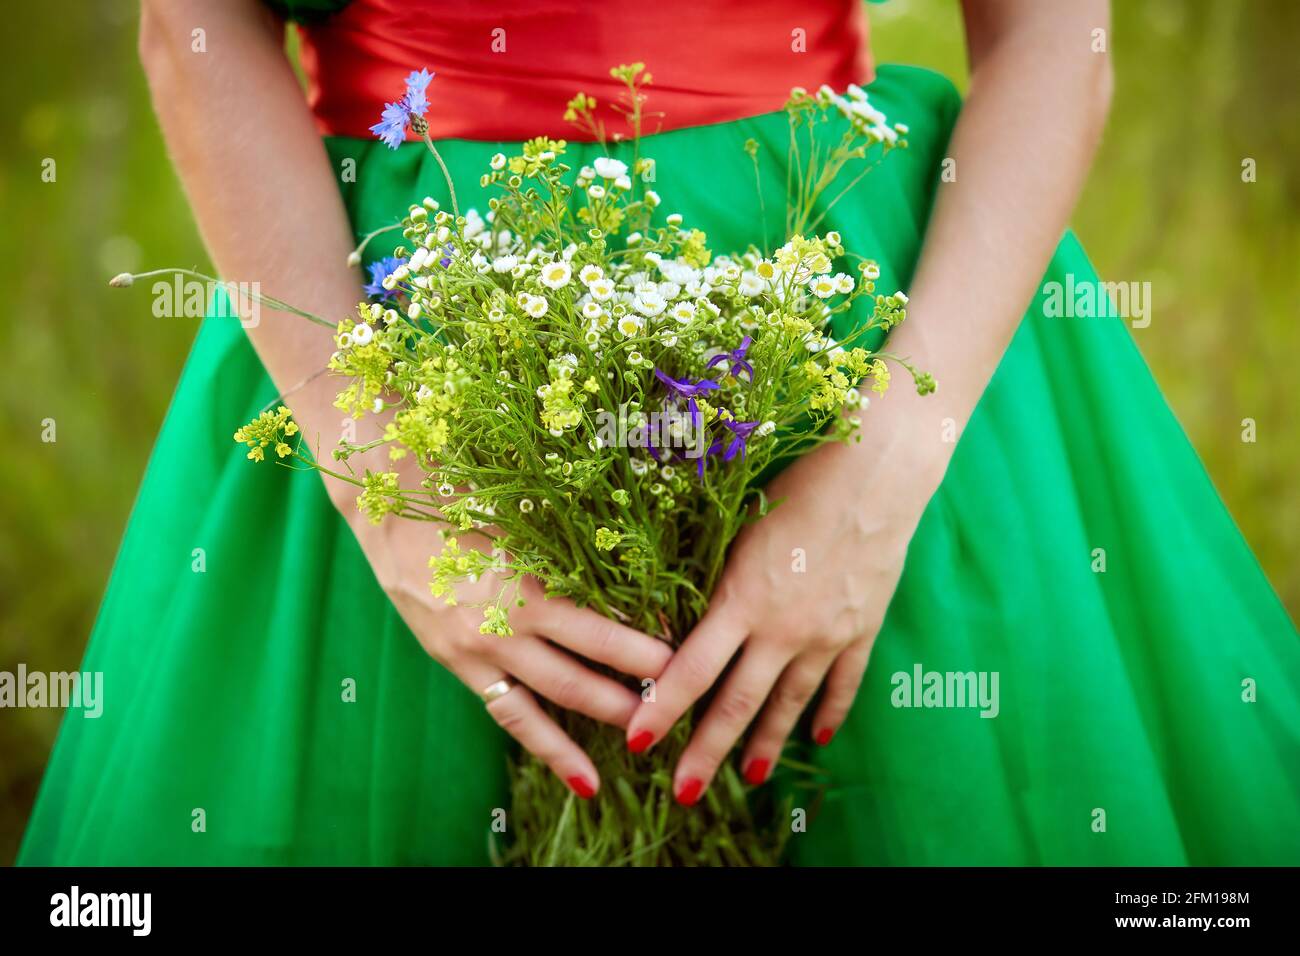 Ragazza in abito verde con manicure rosso tiene un campo selvaggio bouquet di fiori estivi. Primo piano. Ora legale. Concetto di umore estivo. Foto di alta qualità Foto Stock